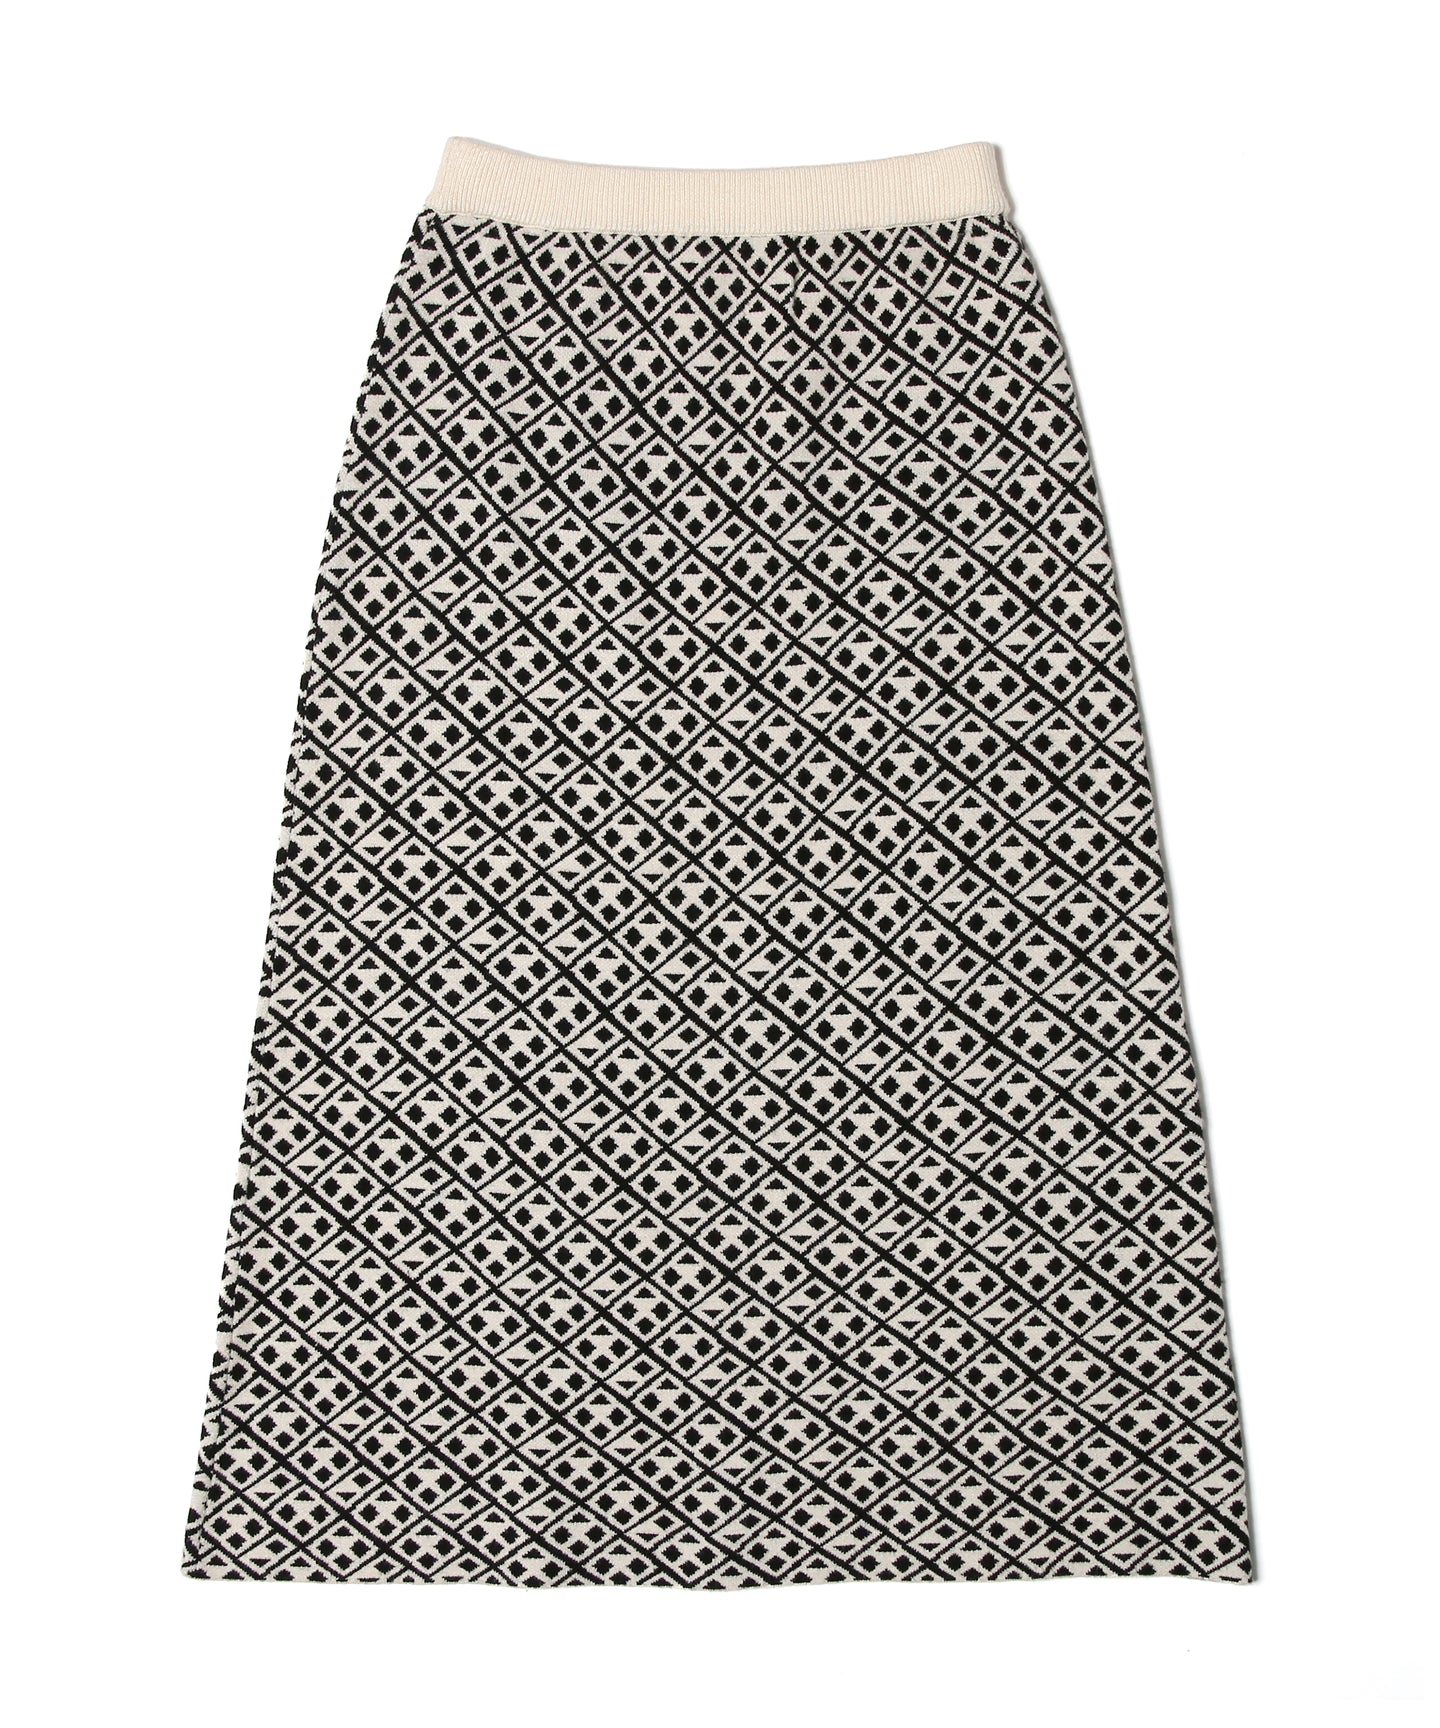 【数量限定商品】446 Total Pattern Knit Long Skirt  Greige